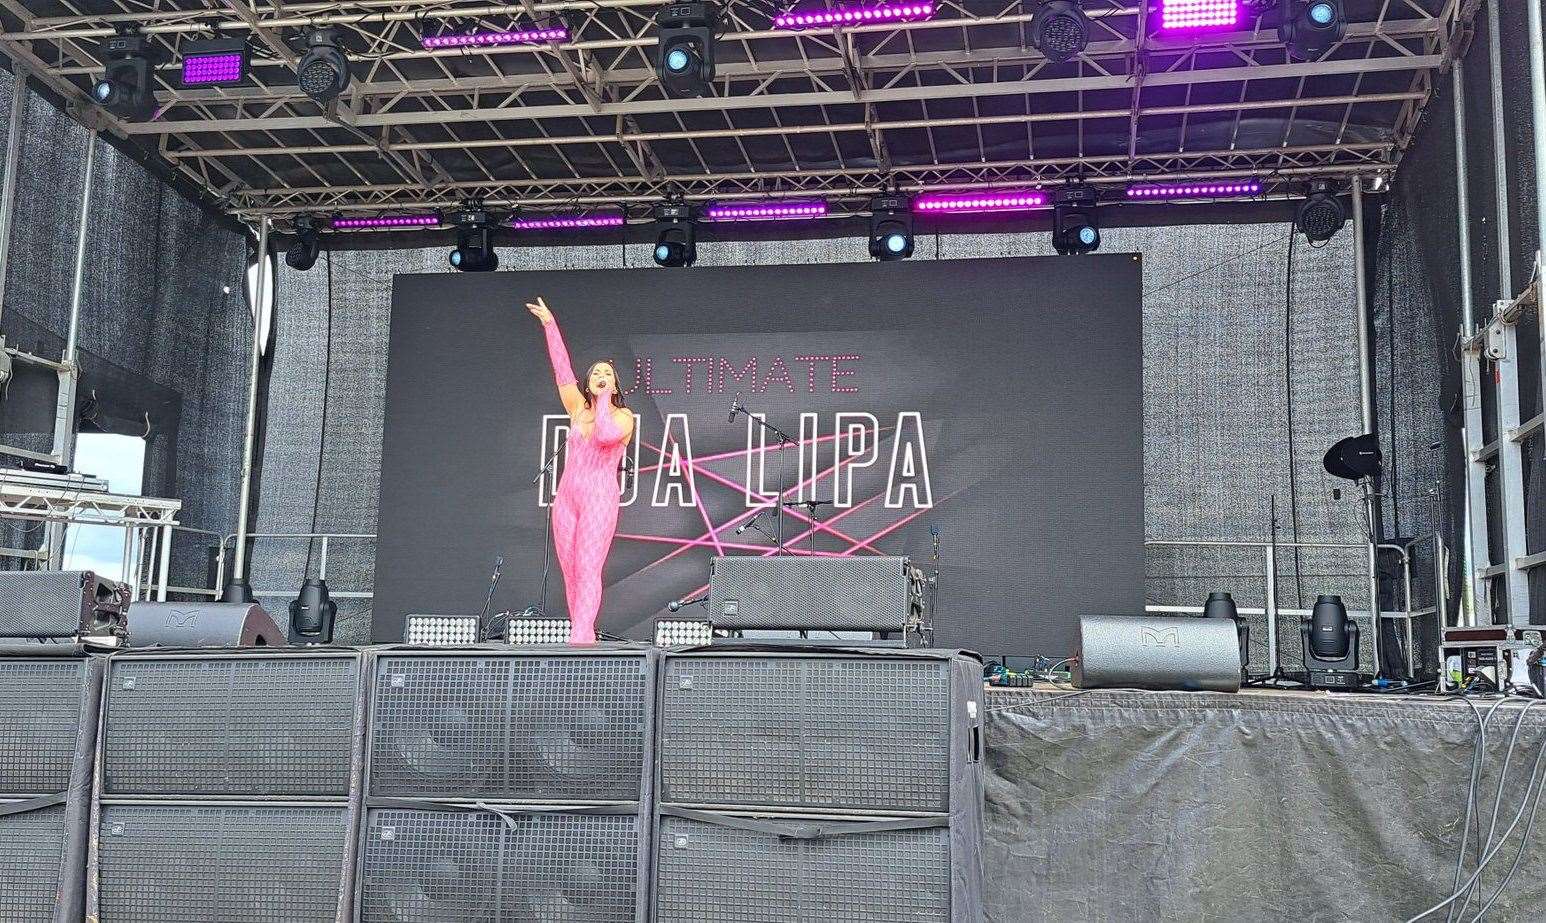 Ultimate Dua Lipa performing at the festival